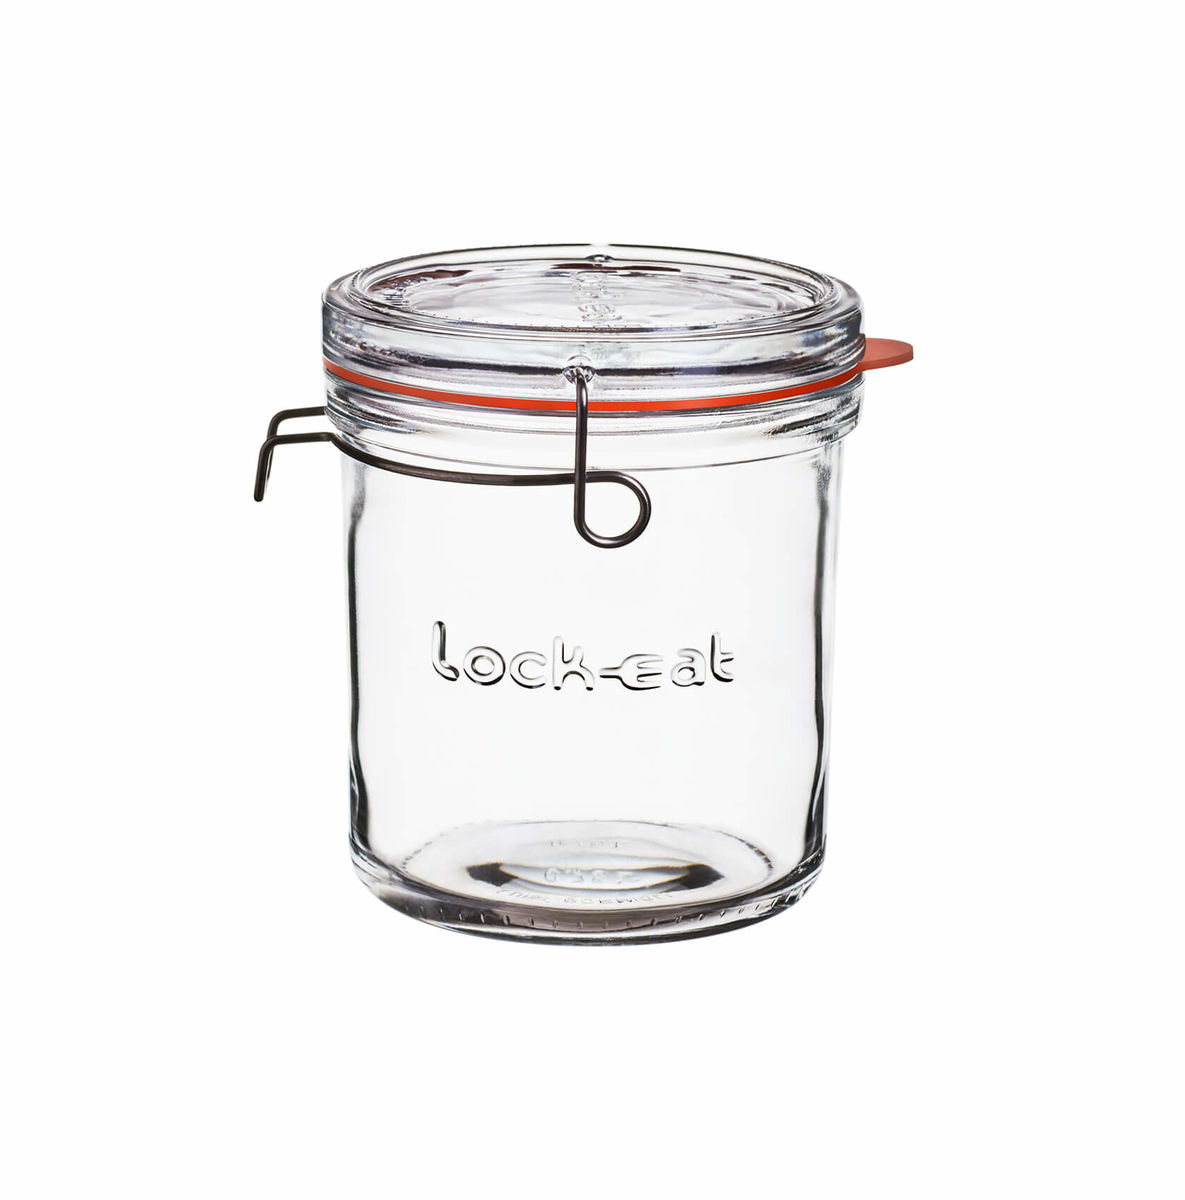 Image of Lock Eat Einmachglas XL 0.75l bei nettoshop.ch